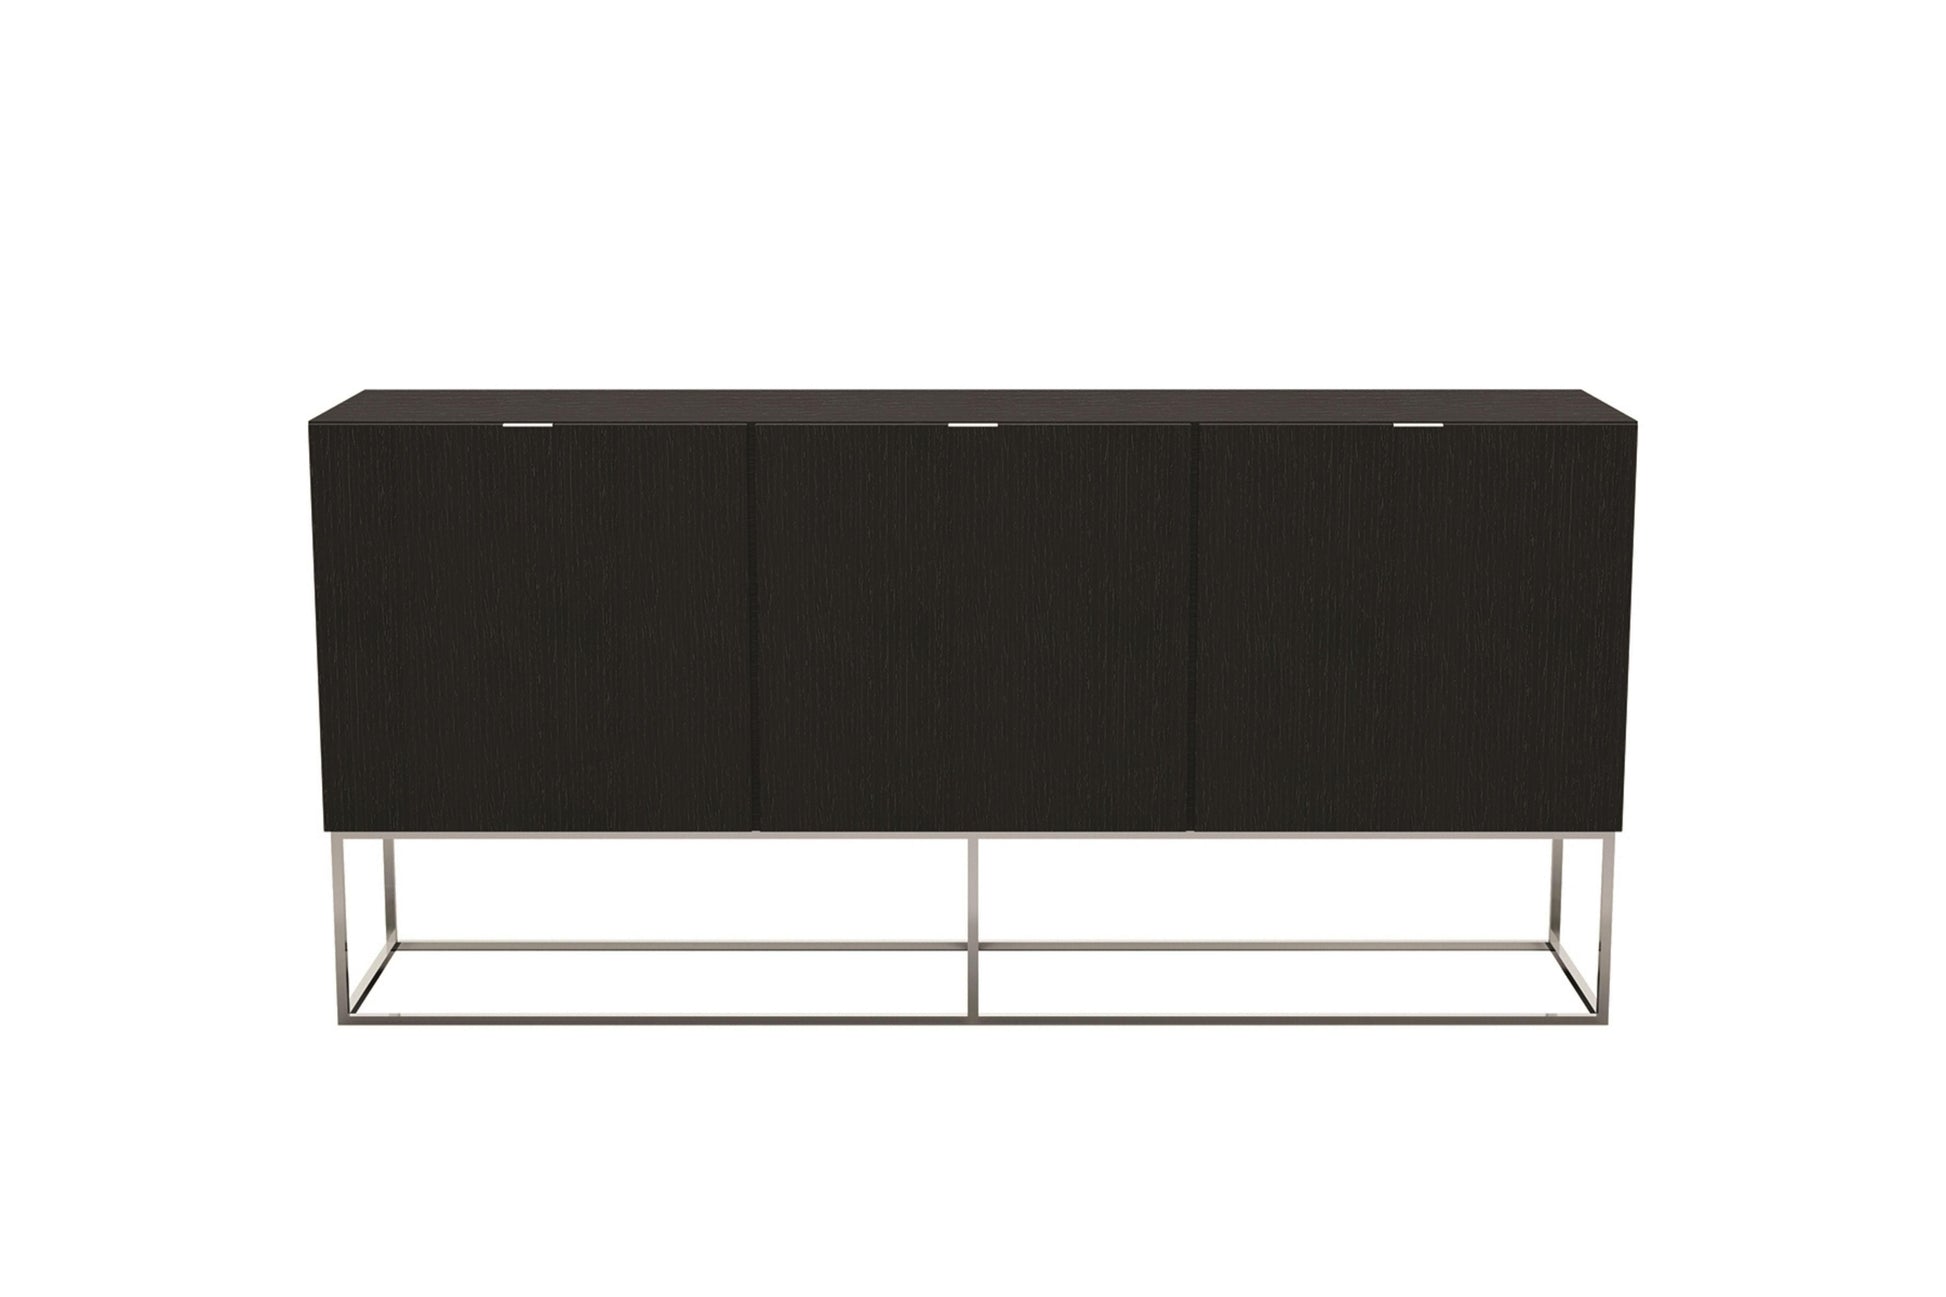 Vizzione Buffet-Server Model CB-1411-BG - Venini Furniture 